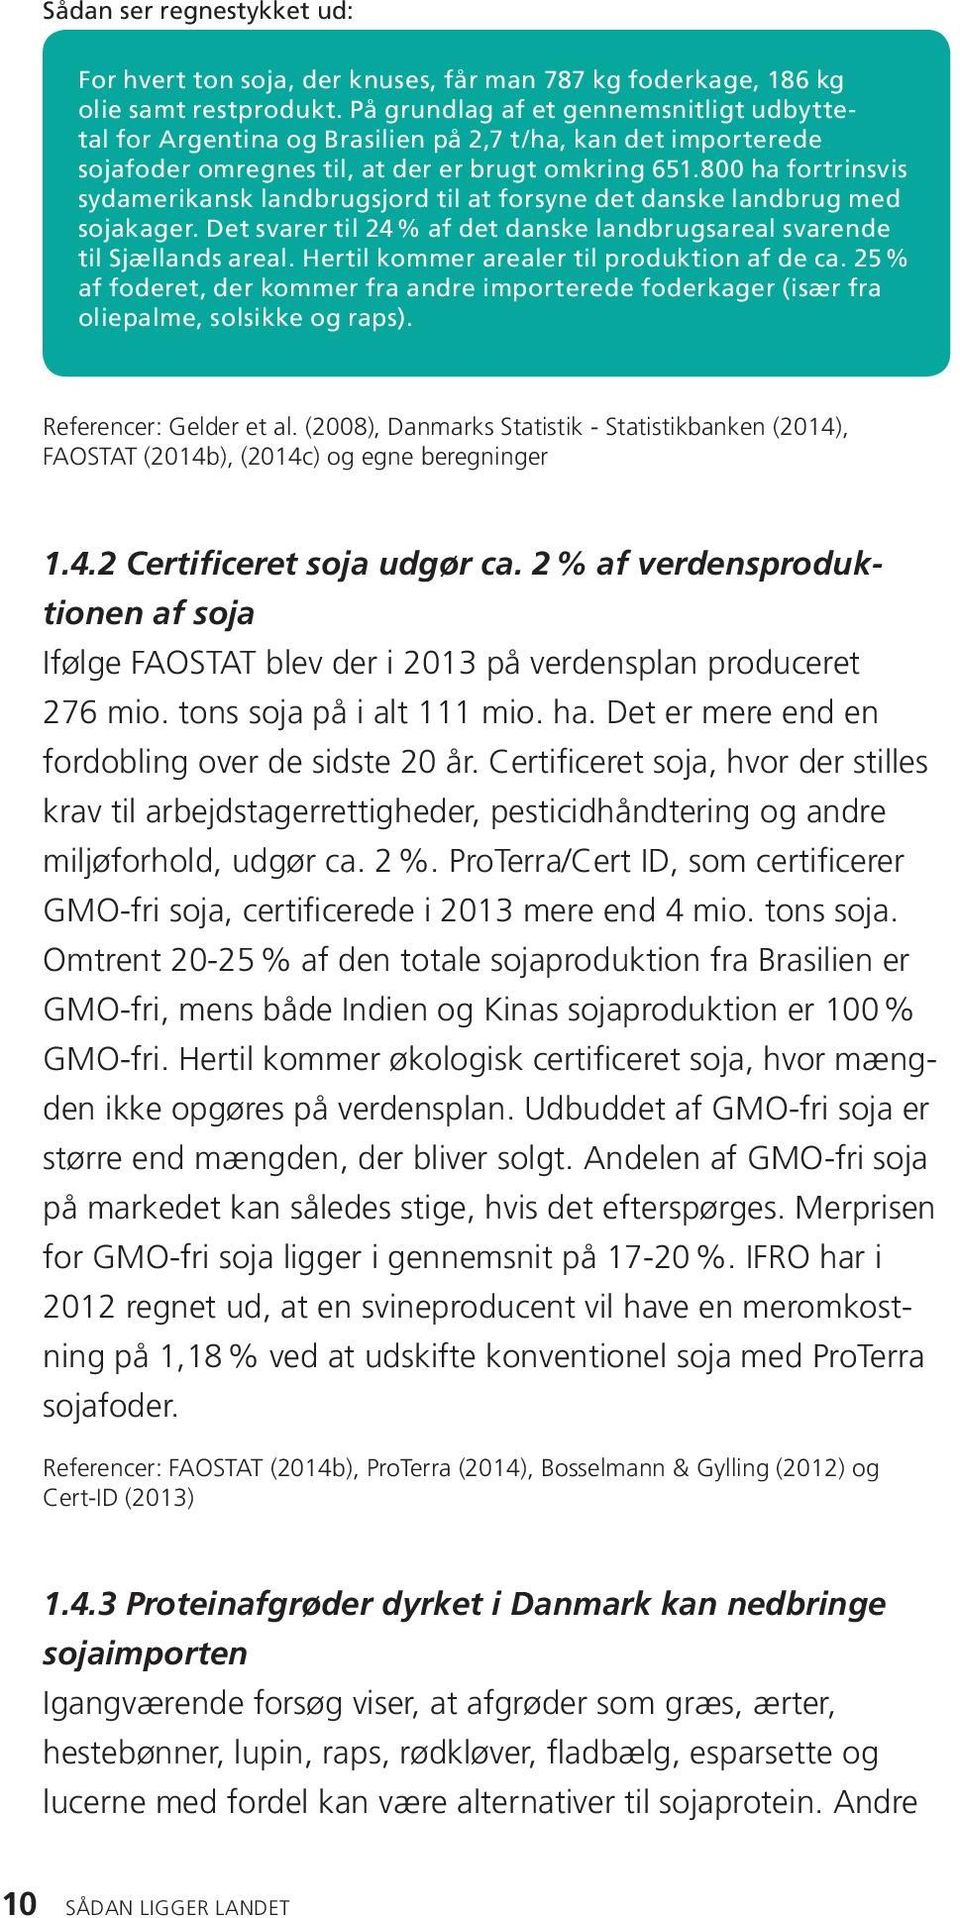 8 ha fortrinsvis sydamerikansk landbrugsjord til at forsyne det danske landbrug med sojakager. Det svarer til 24 % af det danske landbrugsareal svarende til Sjællands areal.